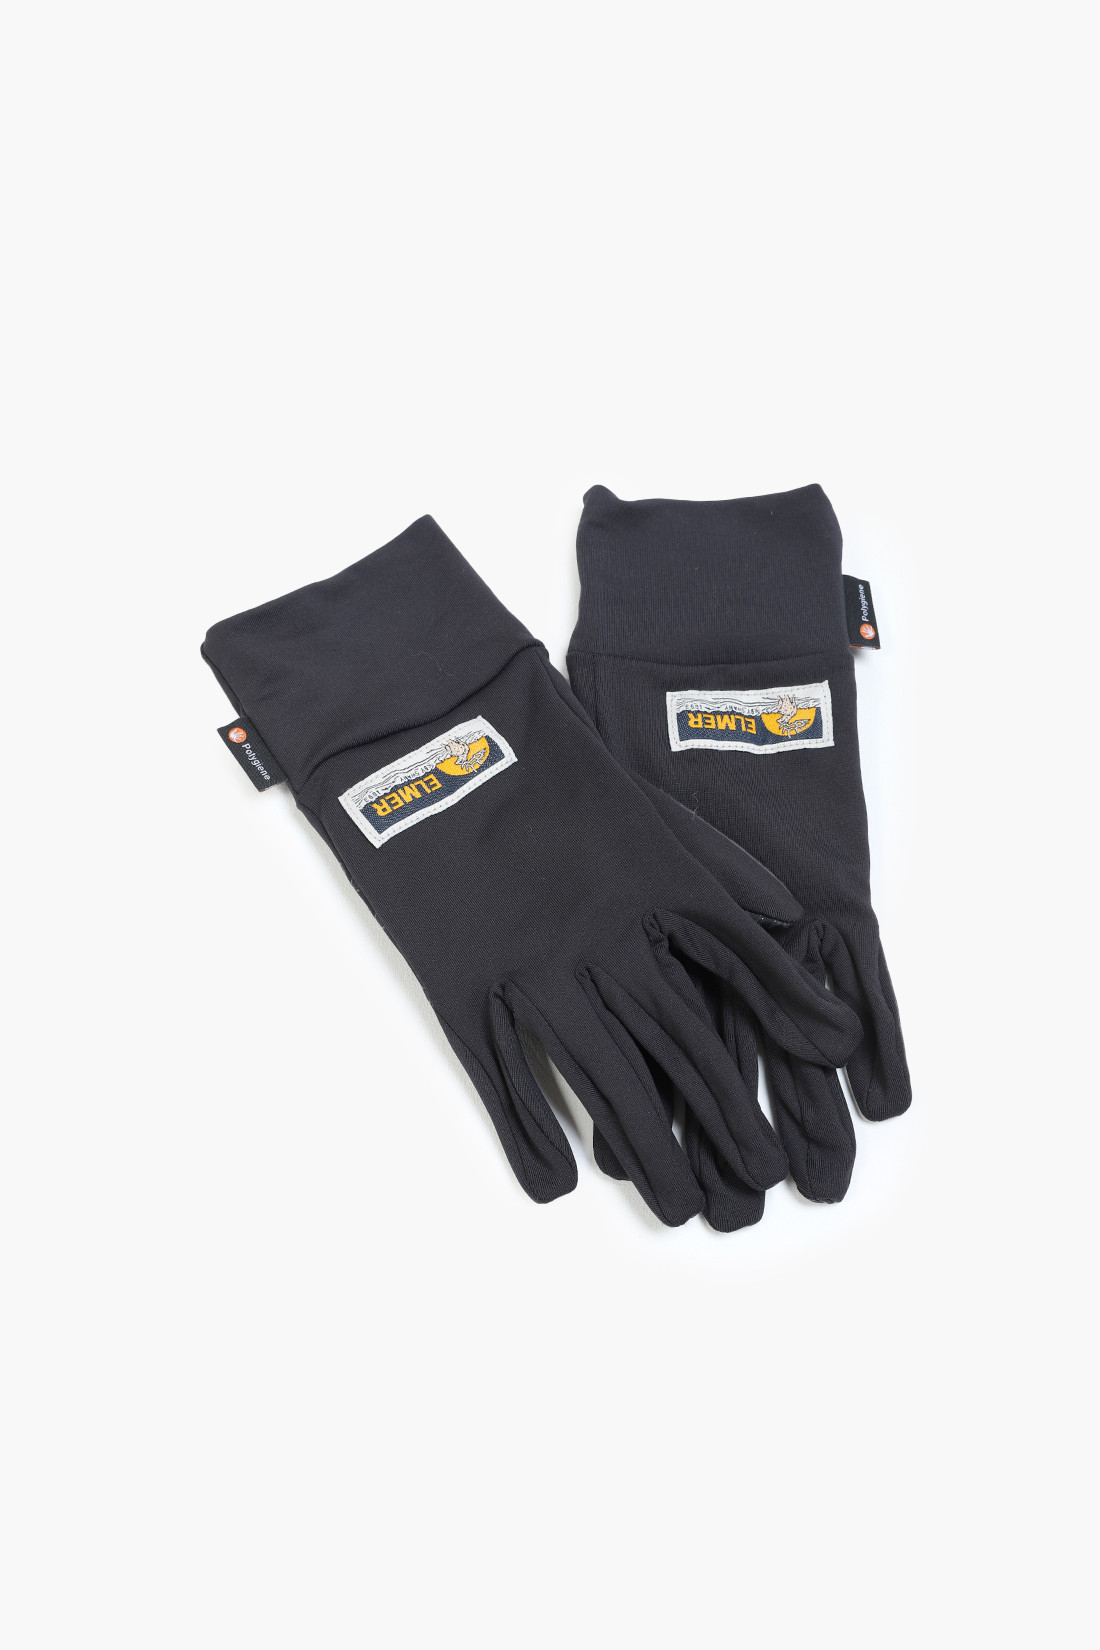 Elmer polygiene gloves Black